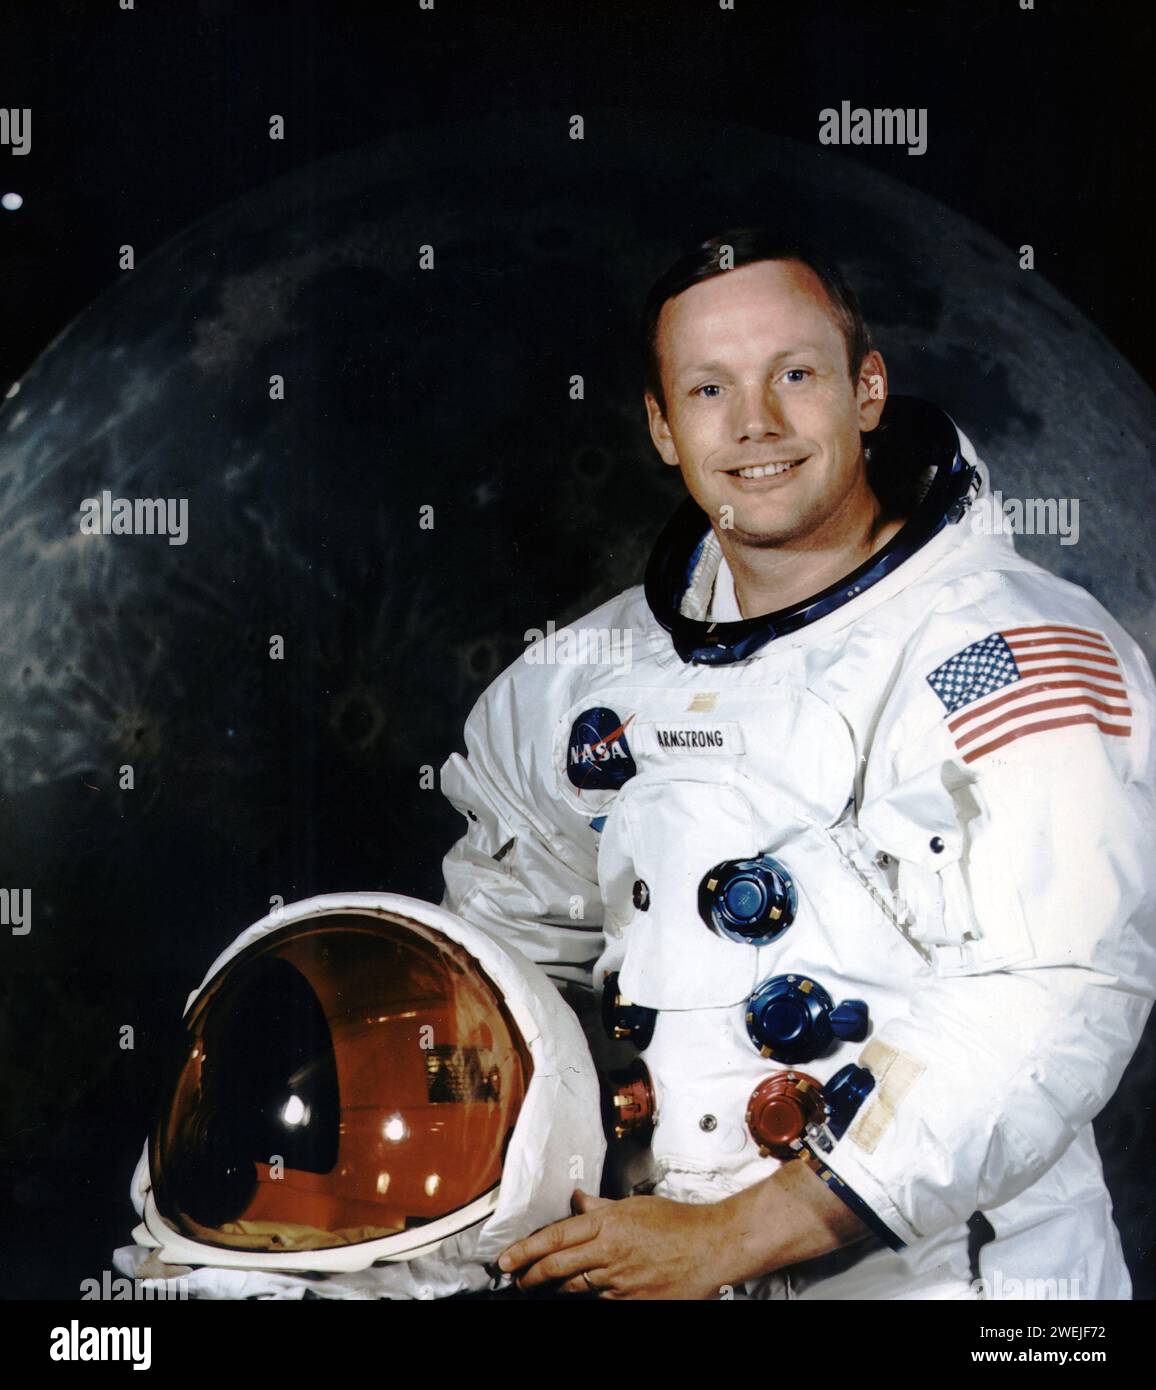 L'astronaute américain Neil A. Armstrong en costume spatial lors du portrait officiel d'Apollo 11, NASA, 09 janvier 1969 Banque D'Images